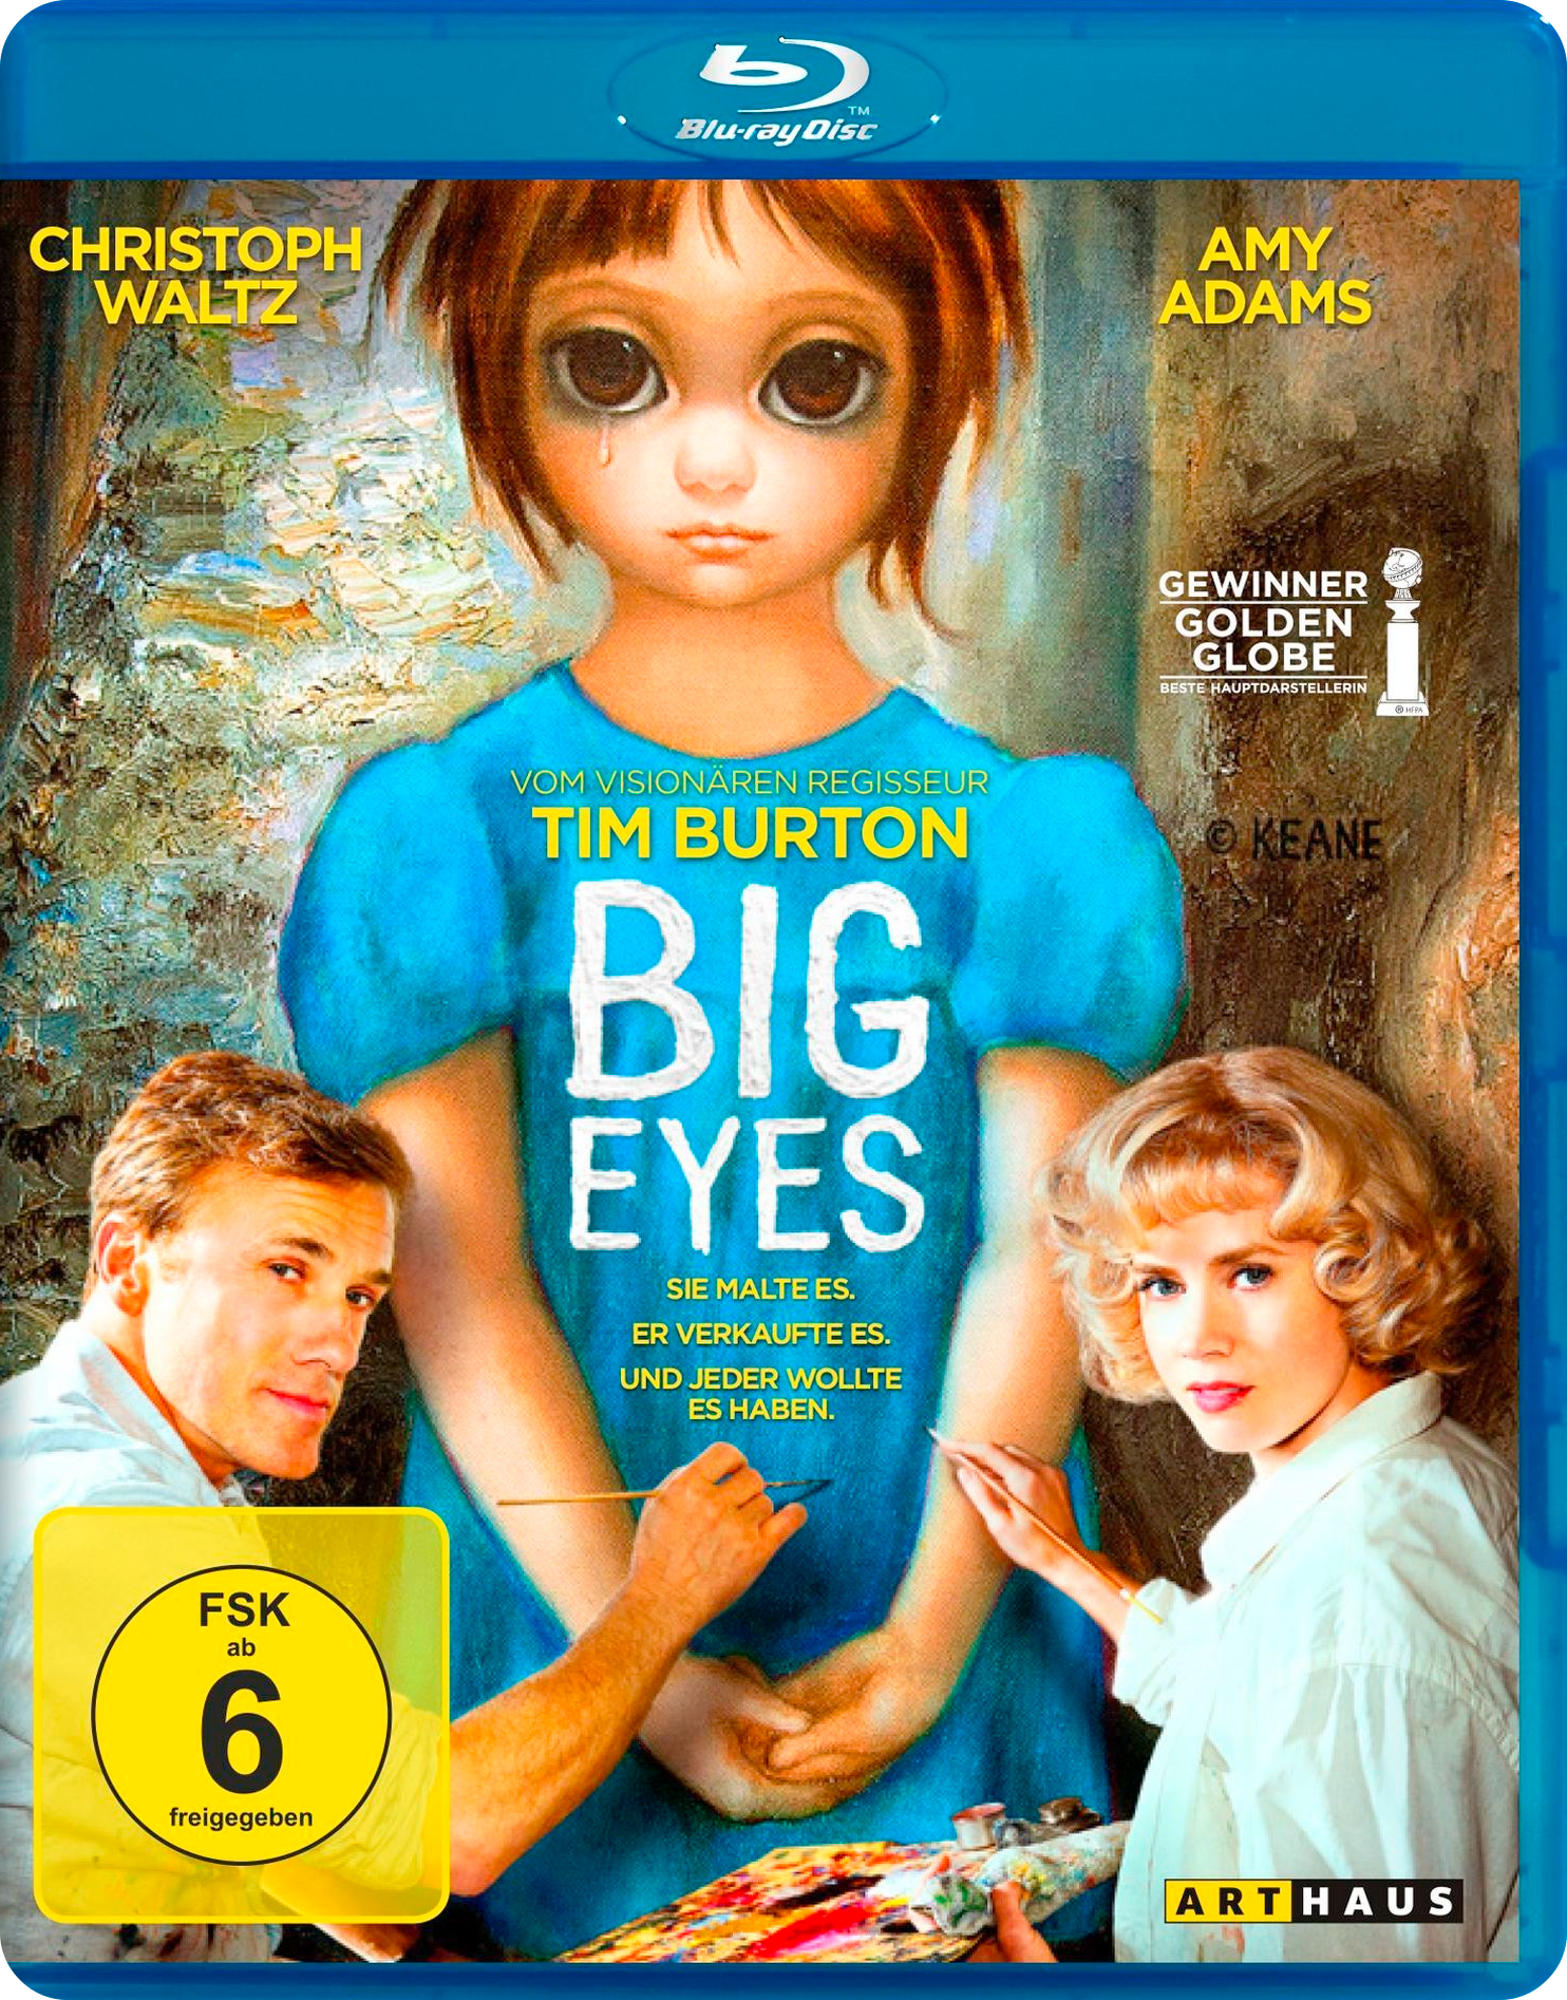 Big Eyes Blu-ray